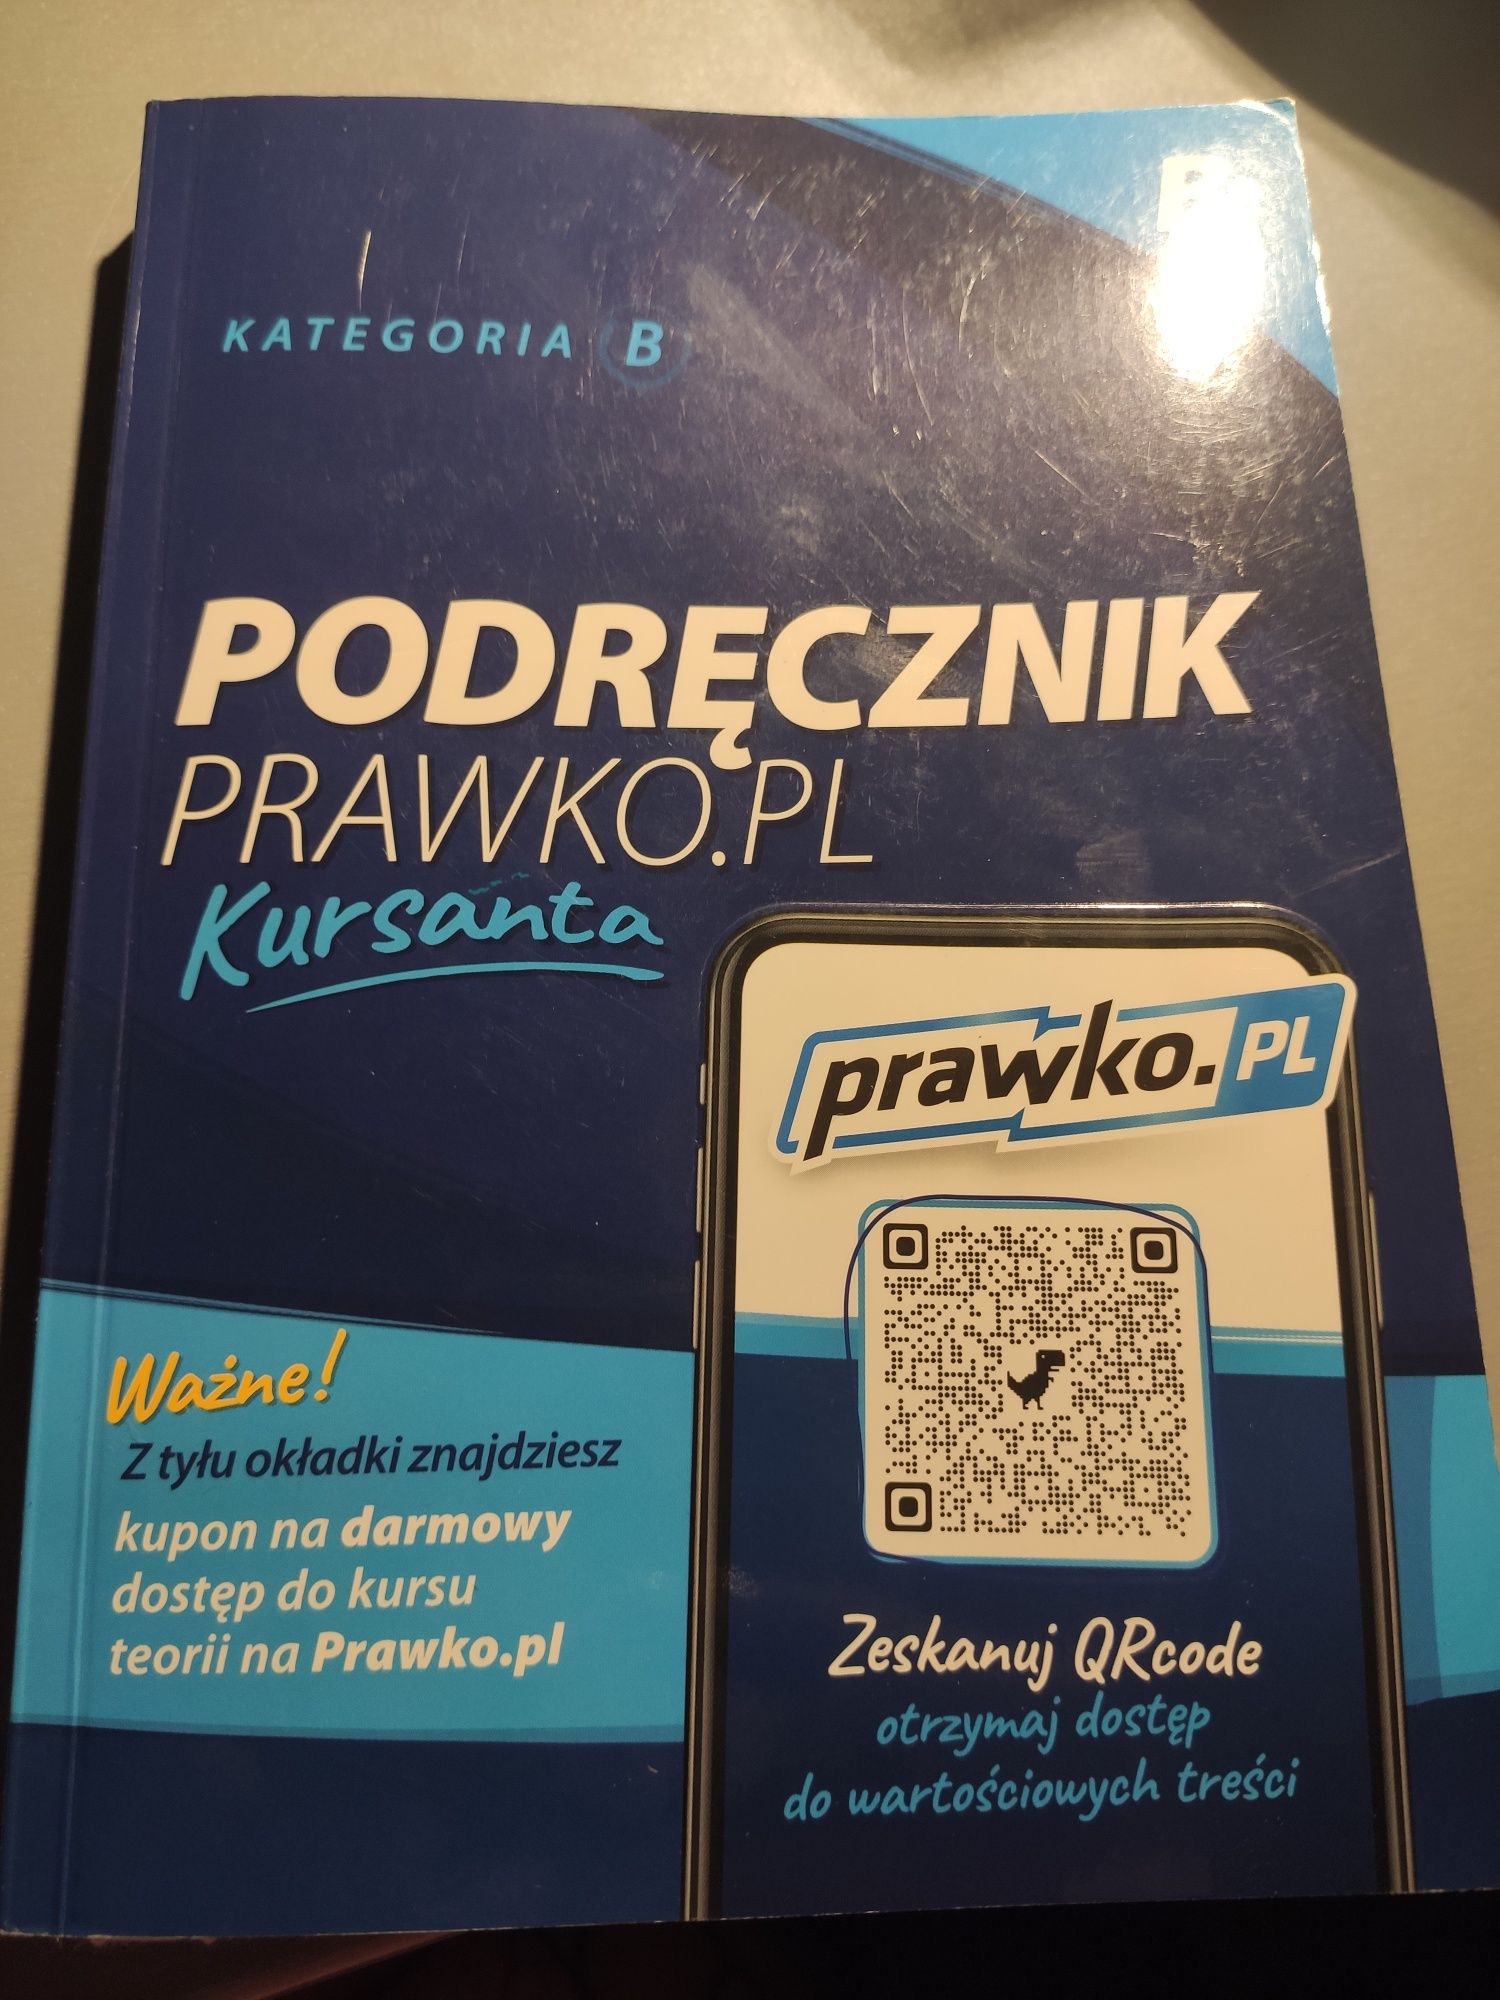 Podręcznik Prawko.pl kategoria B